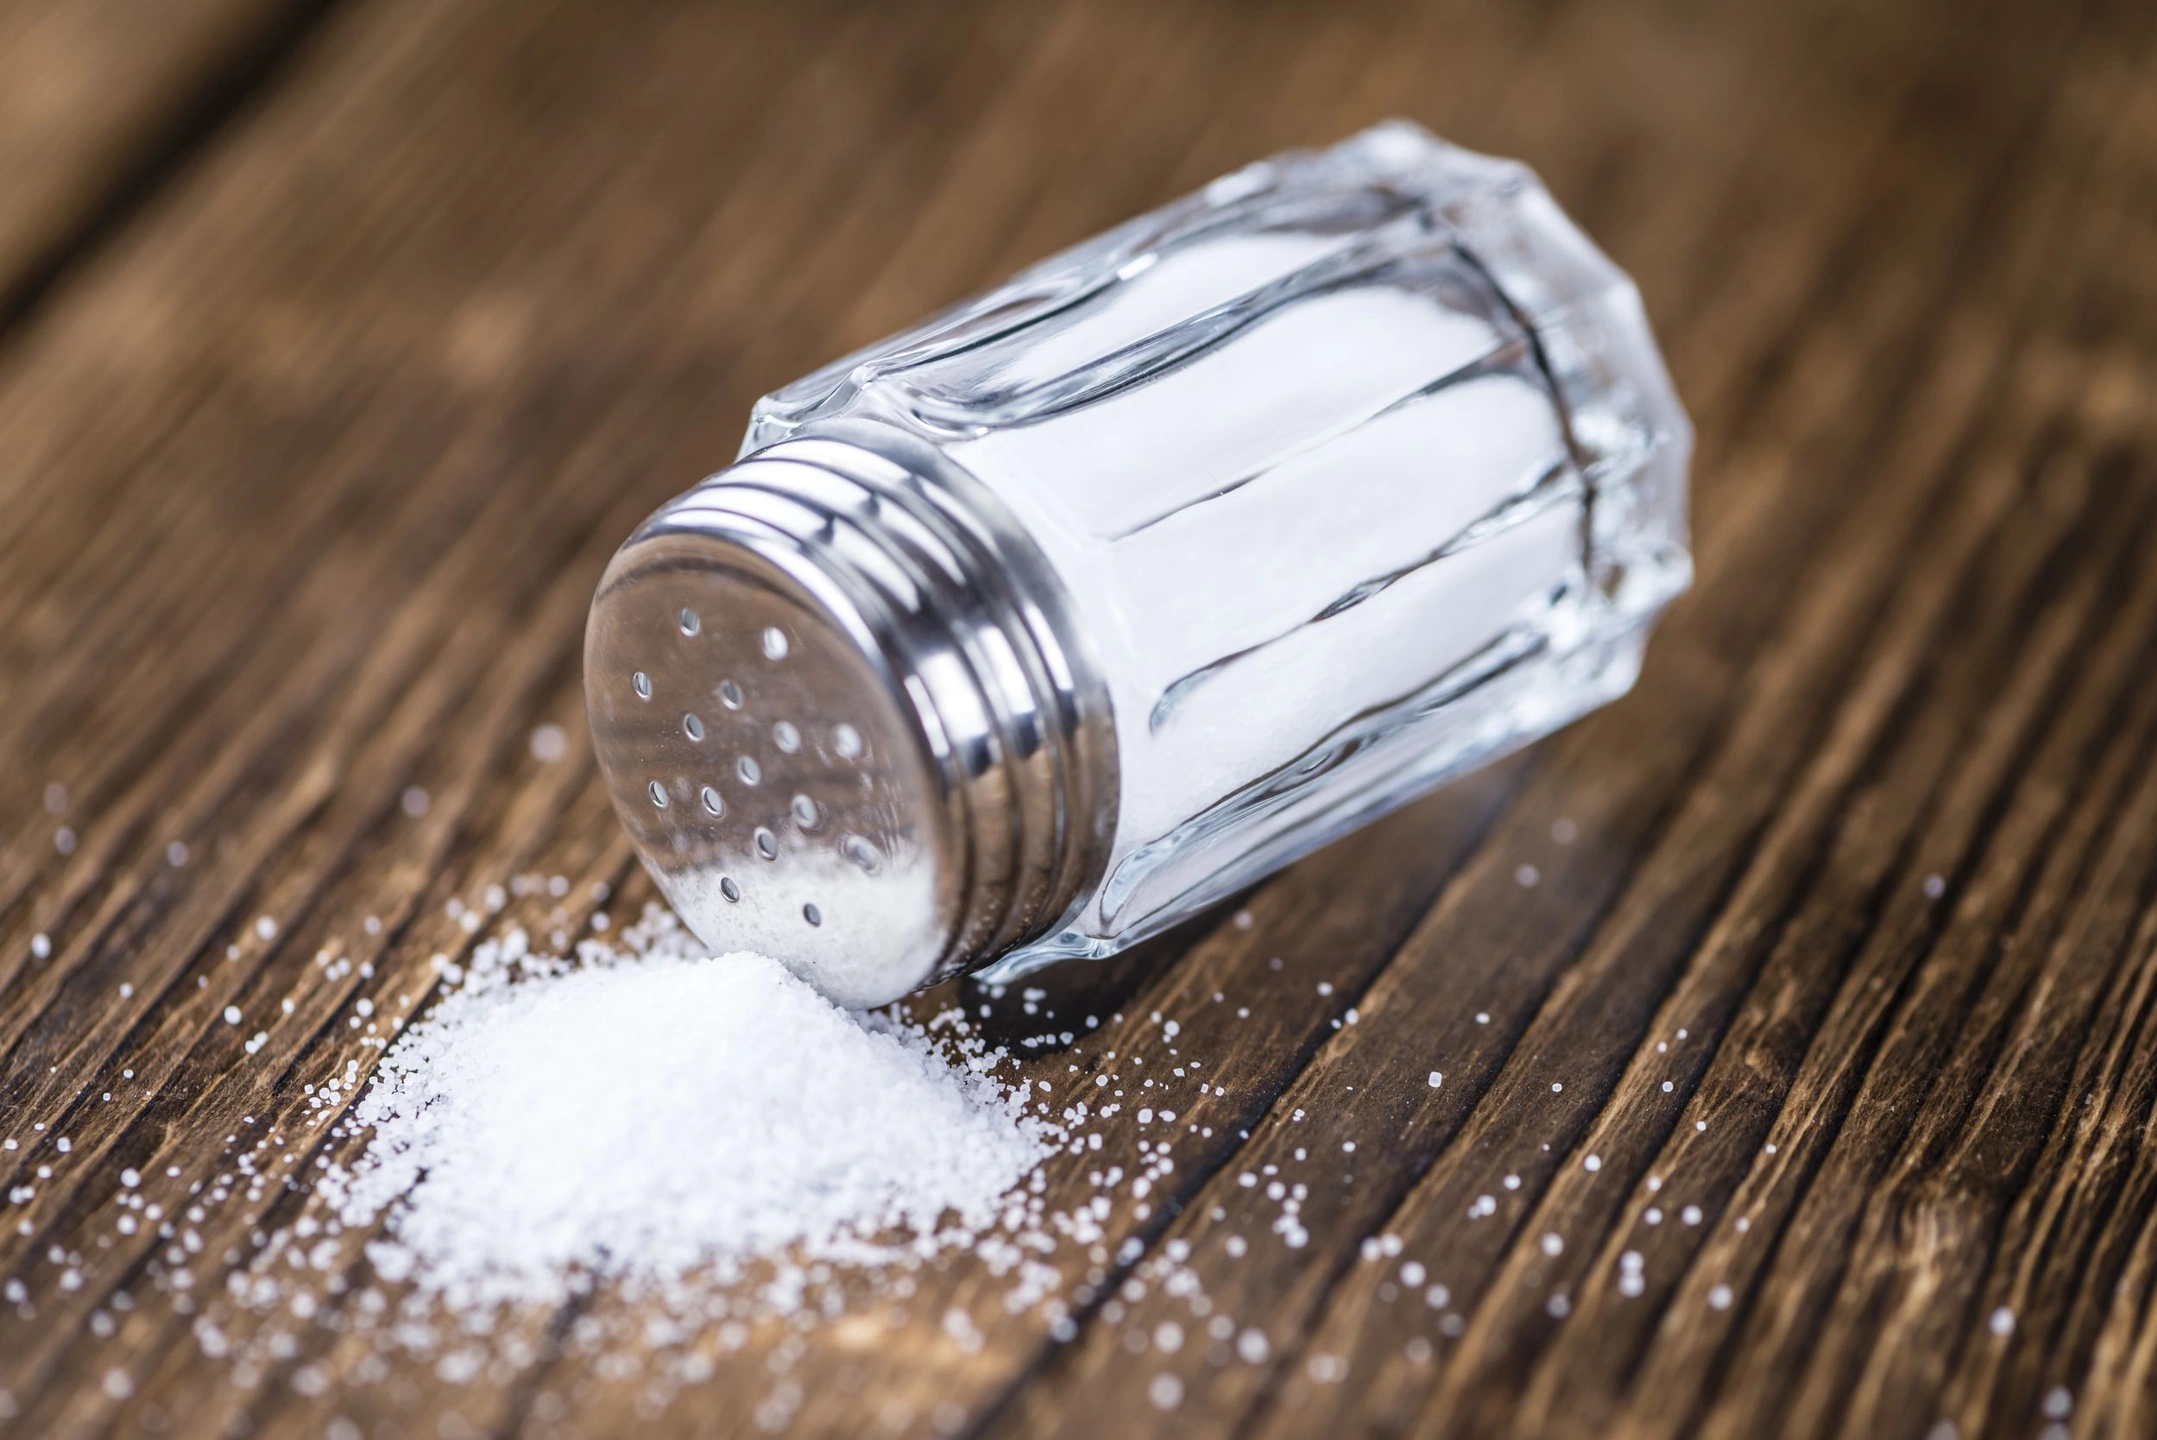 Гастроэнтеролог Лебедева предупредила об опасной добавке в соли